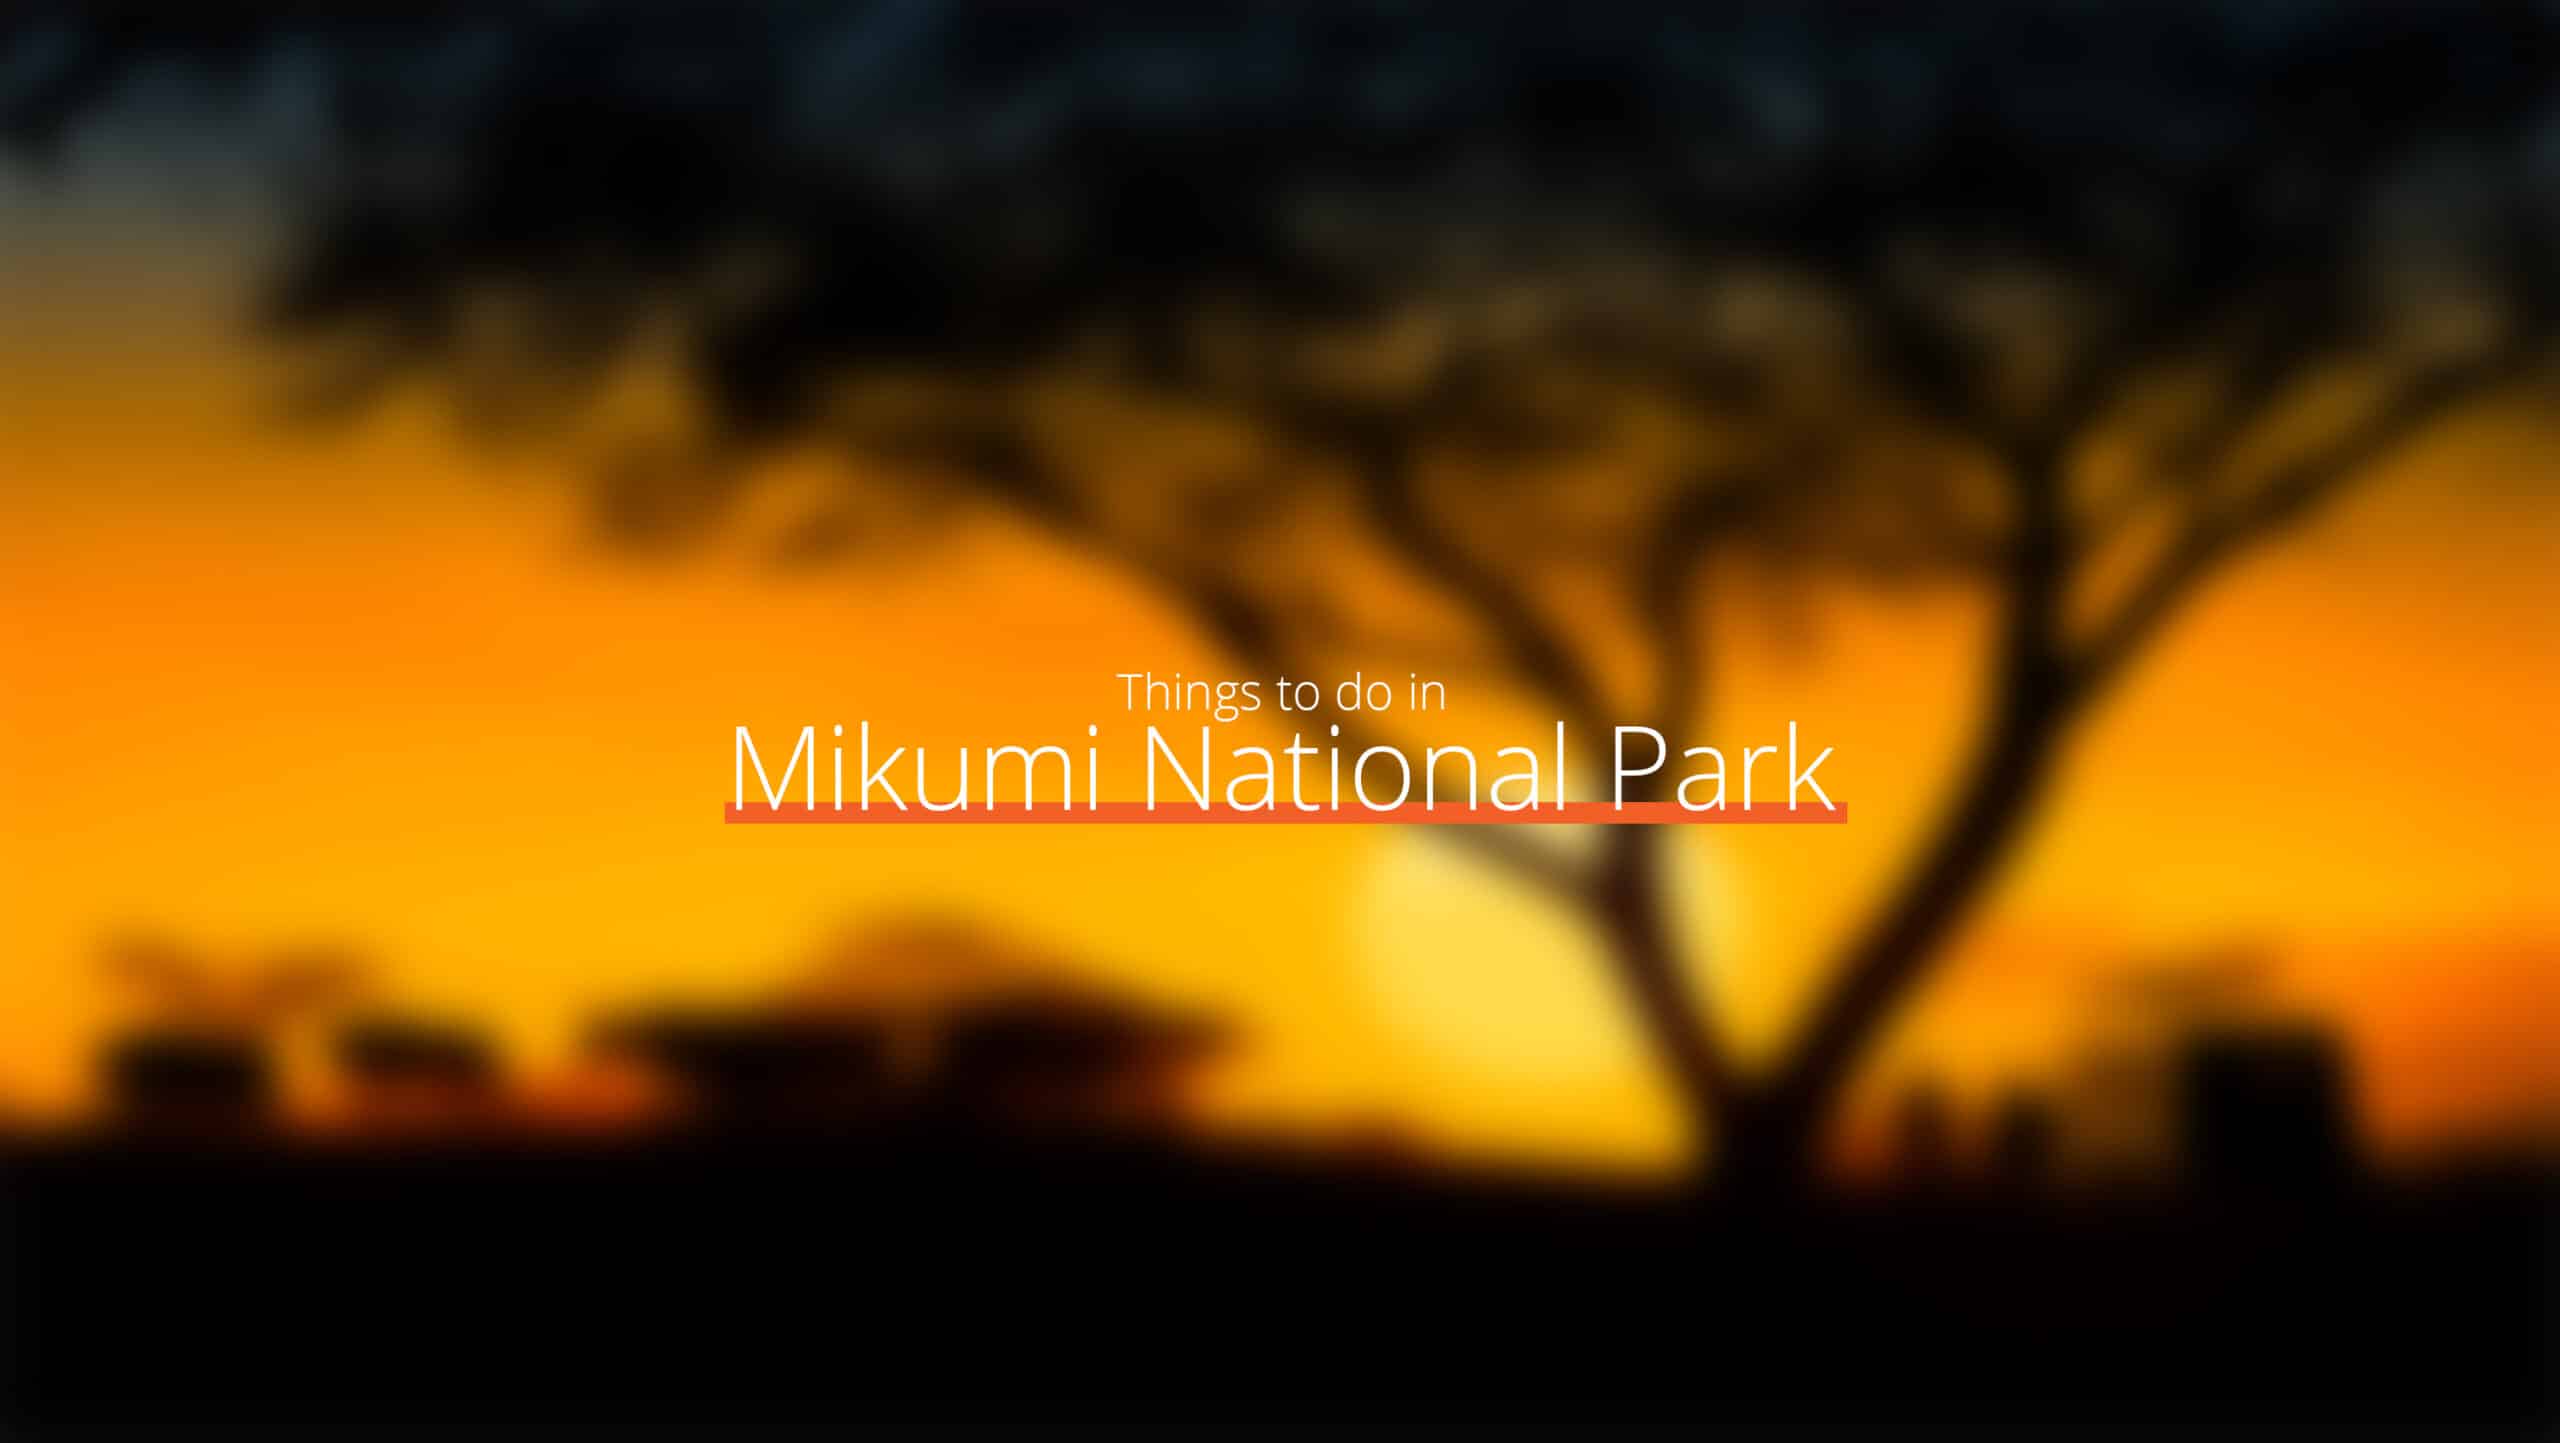 坦桑尼亚 - mikumi 国家公园 1 级 - 当地法律和习俗